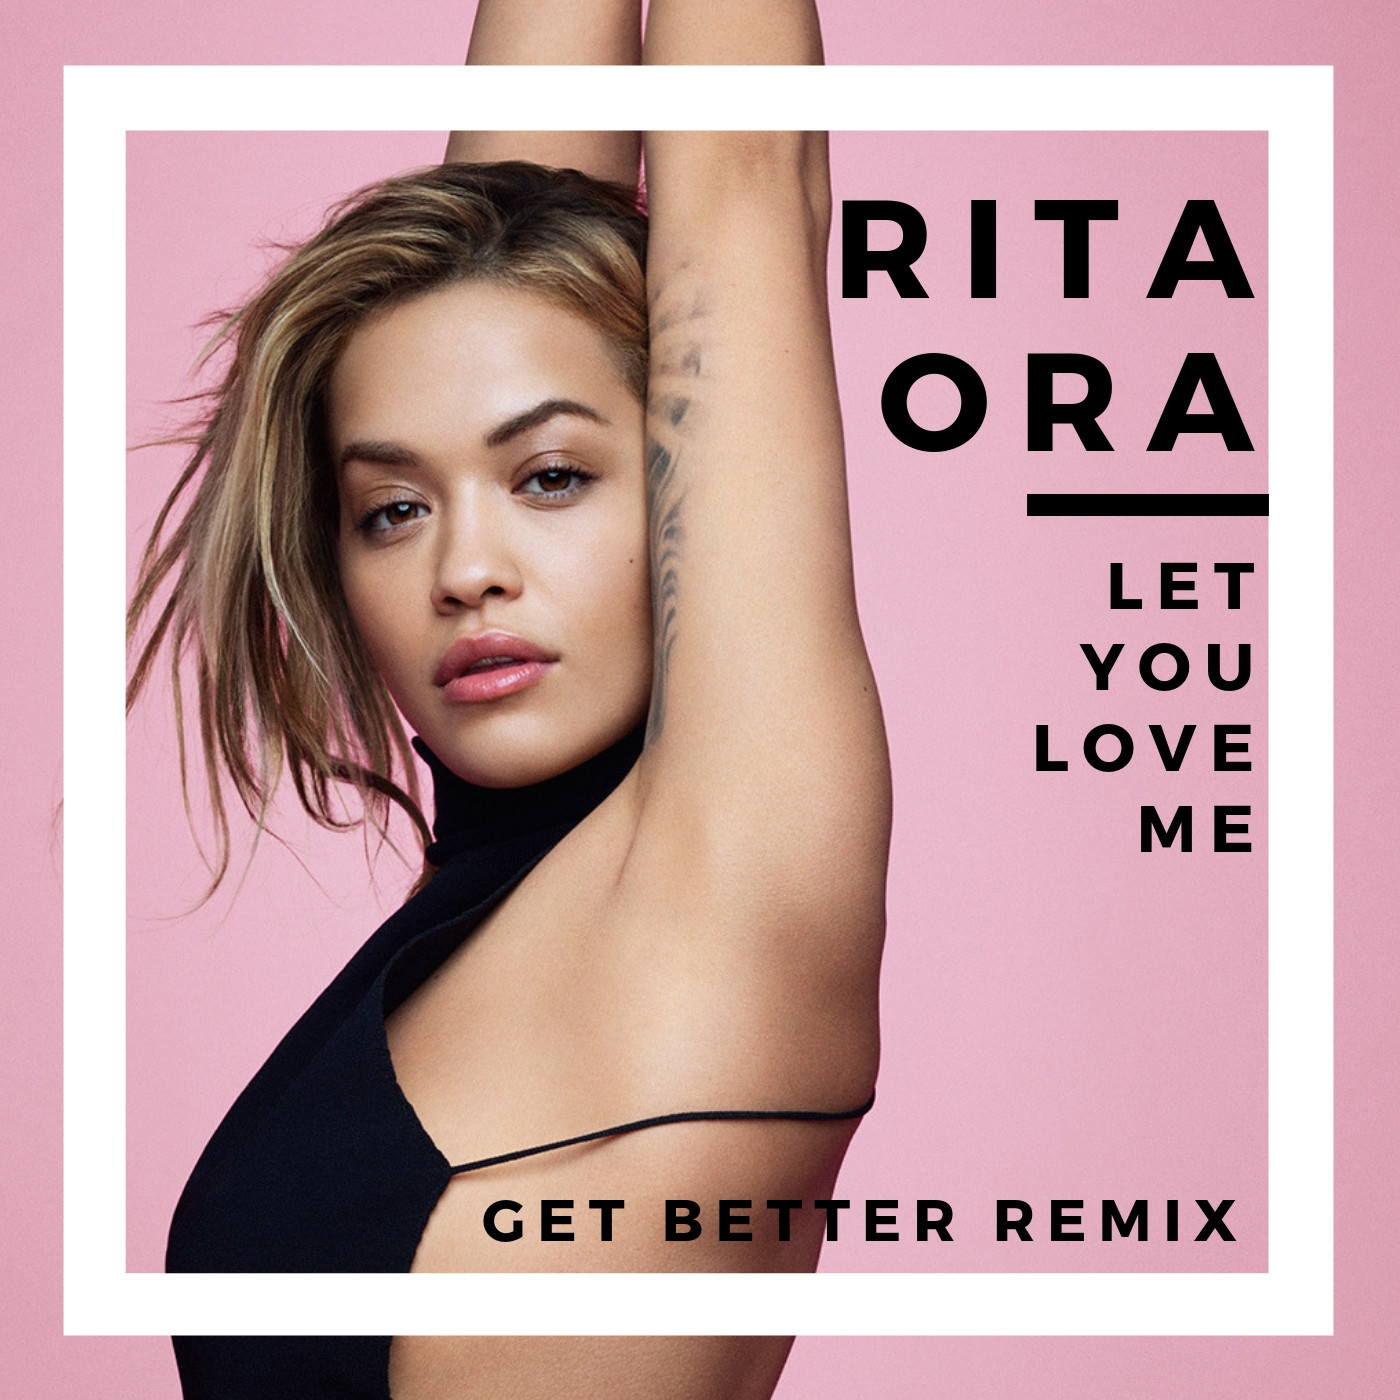 Ora let. Rita ora Let you Love me. Rita ora обложка. Rita ora обложка альбома.